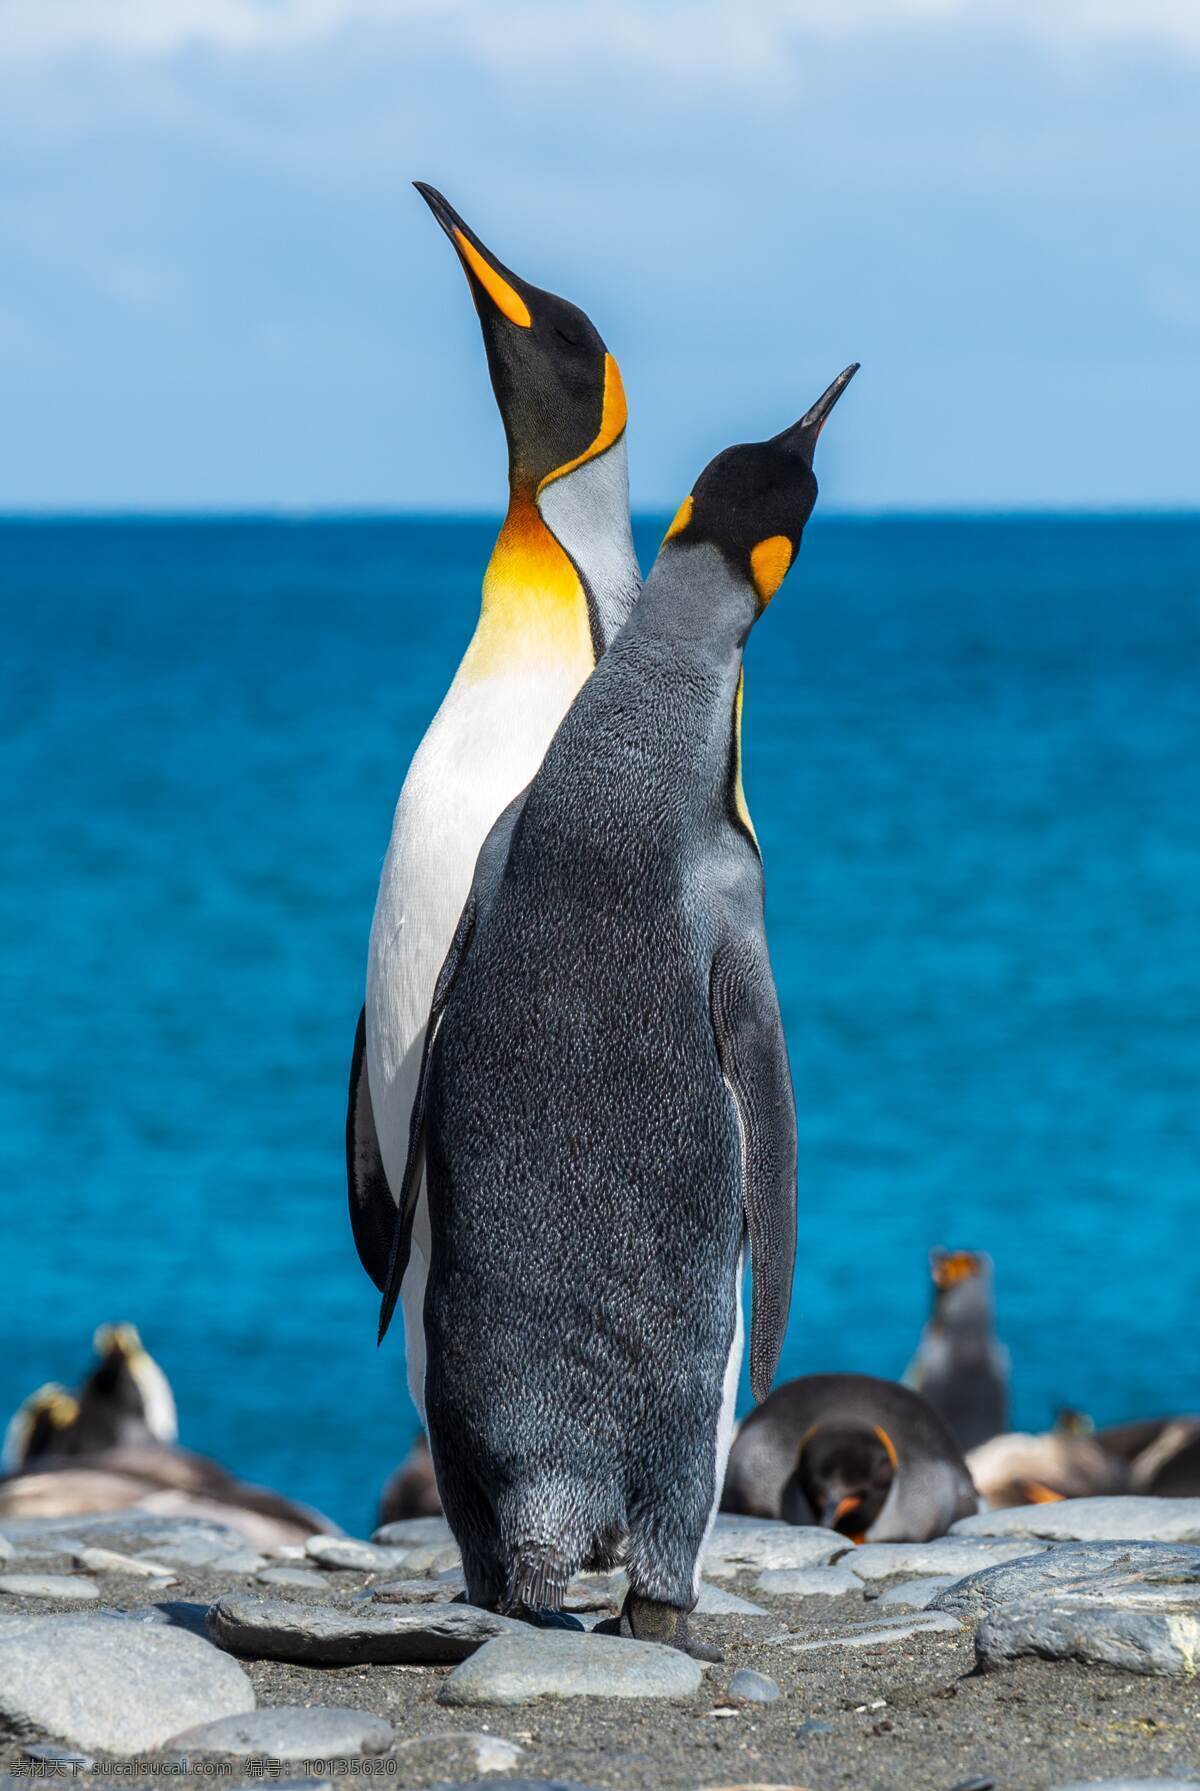 拍照 照片 拍摄 壁纸 高清 特写 南极企鹅 动物 帝企鹅 小企鹅 呆萌 生物世界 海洋生物